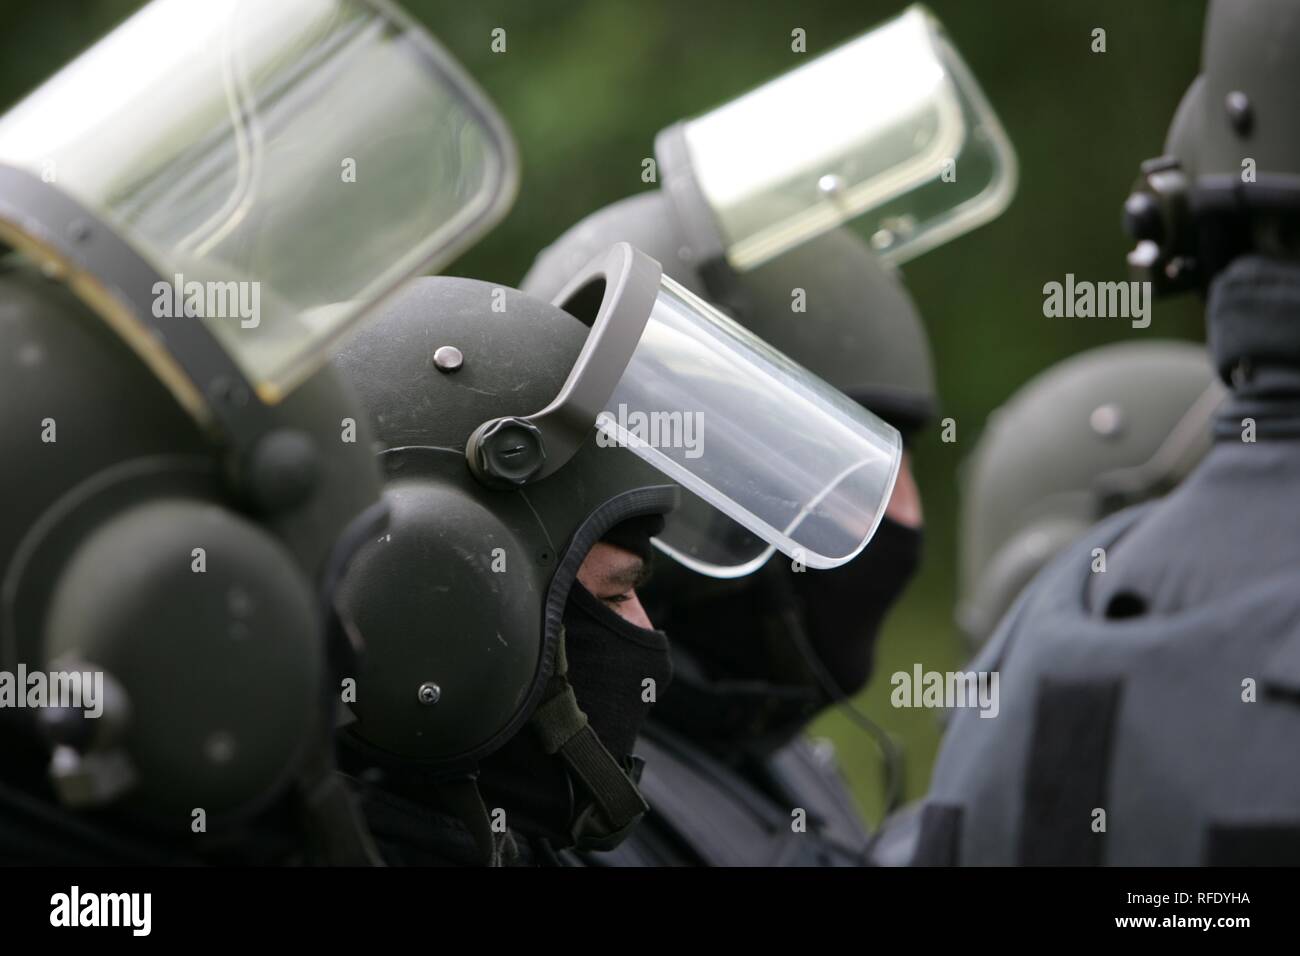 DEU Germania: Esercizio di un team SWAT Hemer su uno speciale addestramento delle forze di polizia di massa. Foto Stock